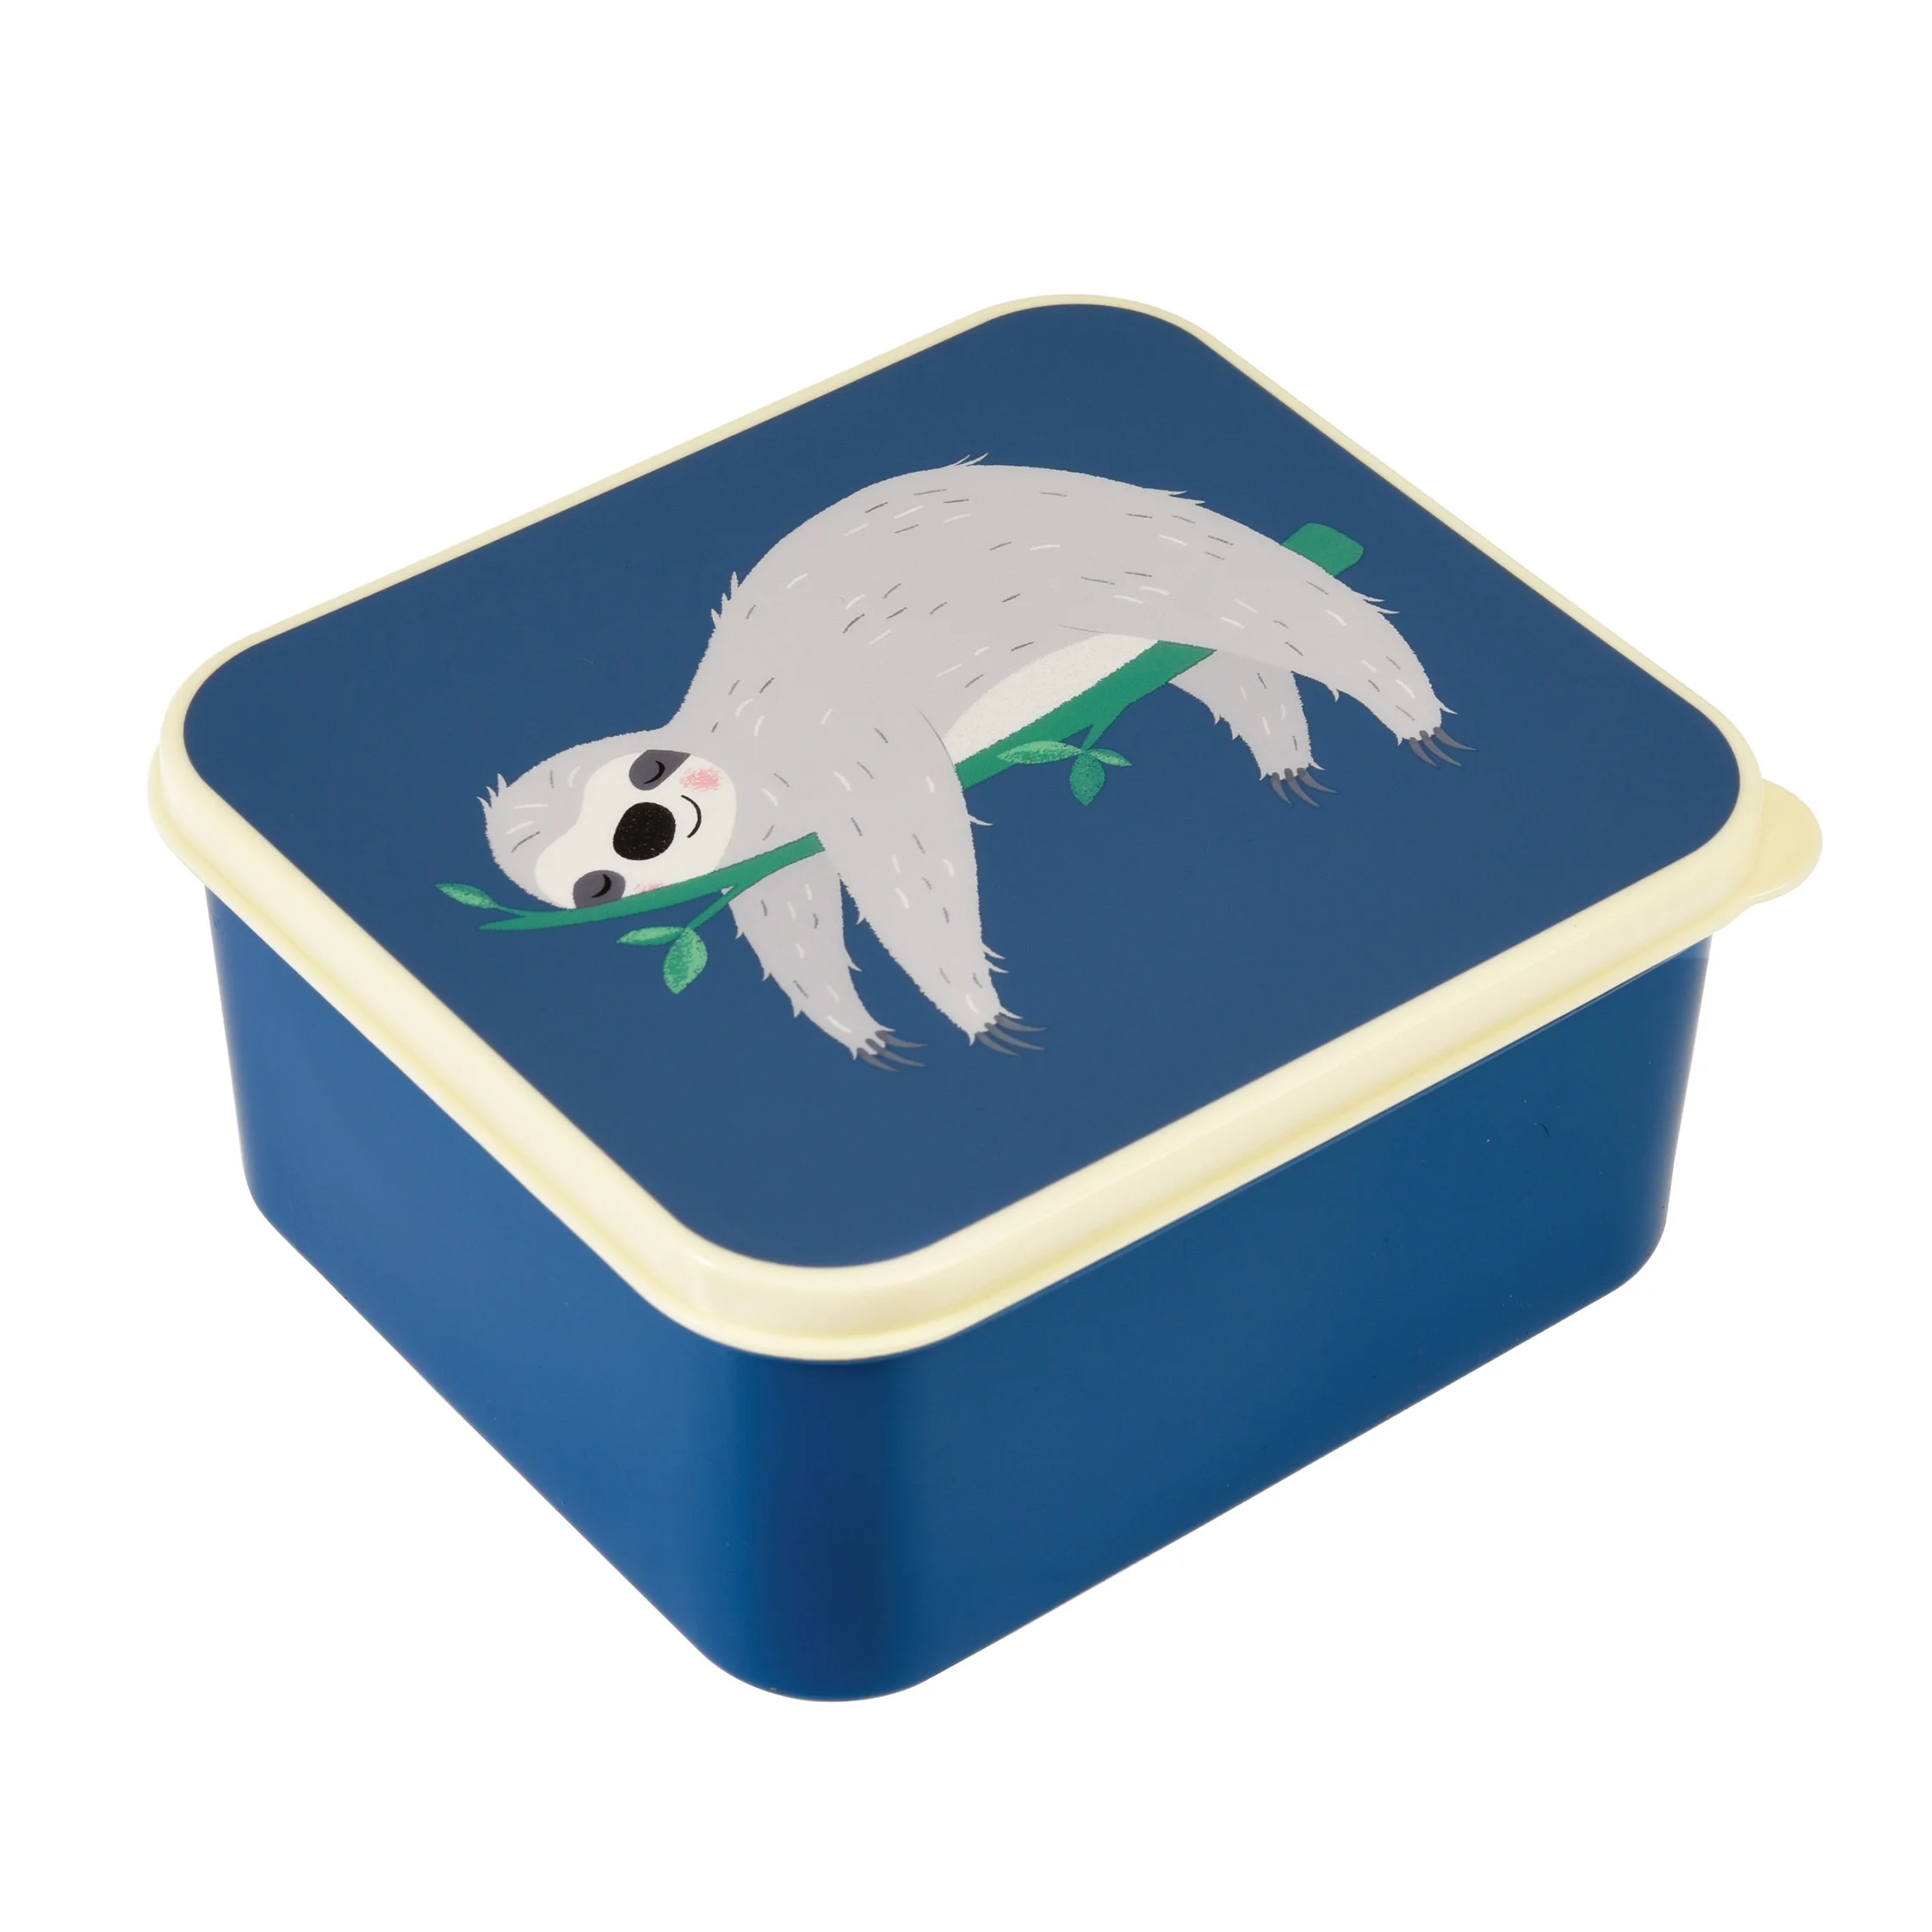 sandwich lunch box - sydney the sloth